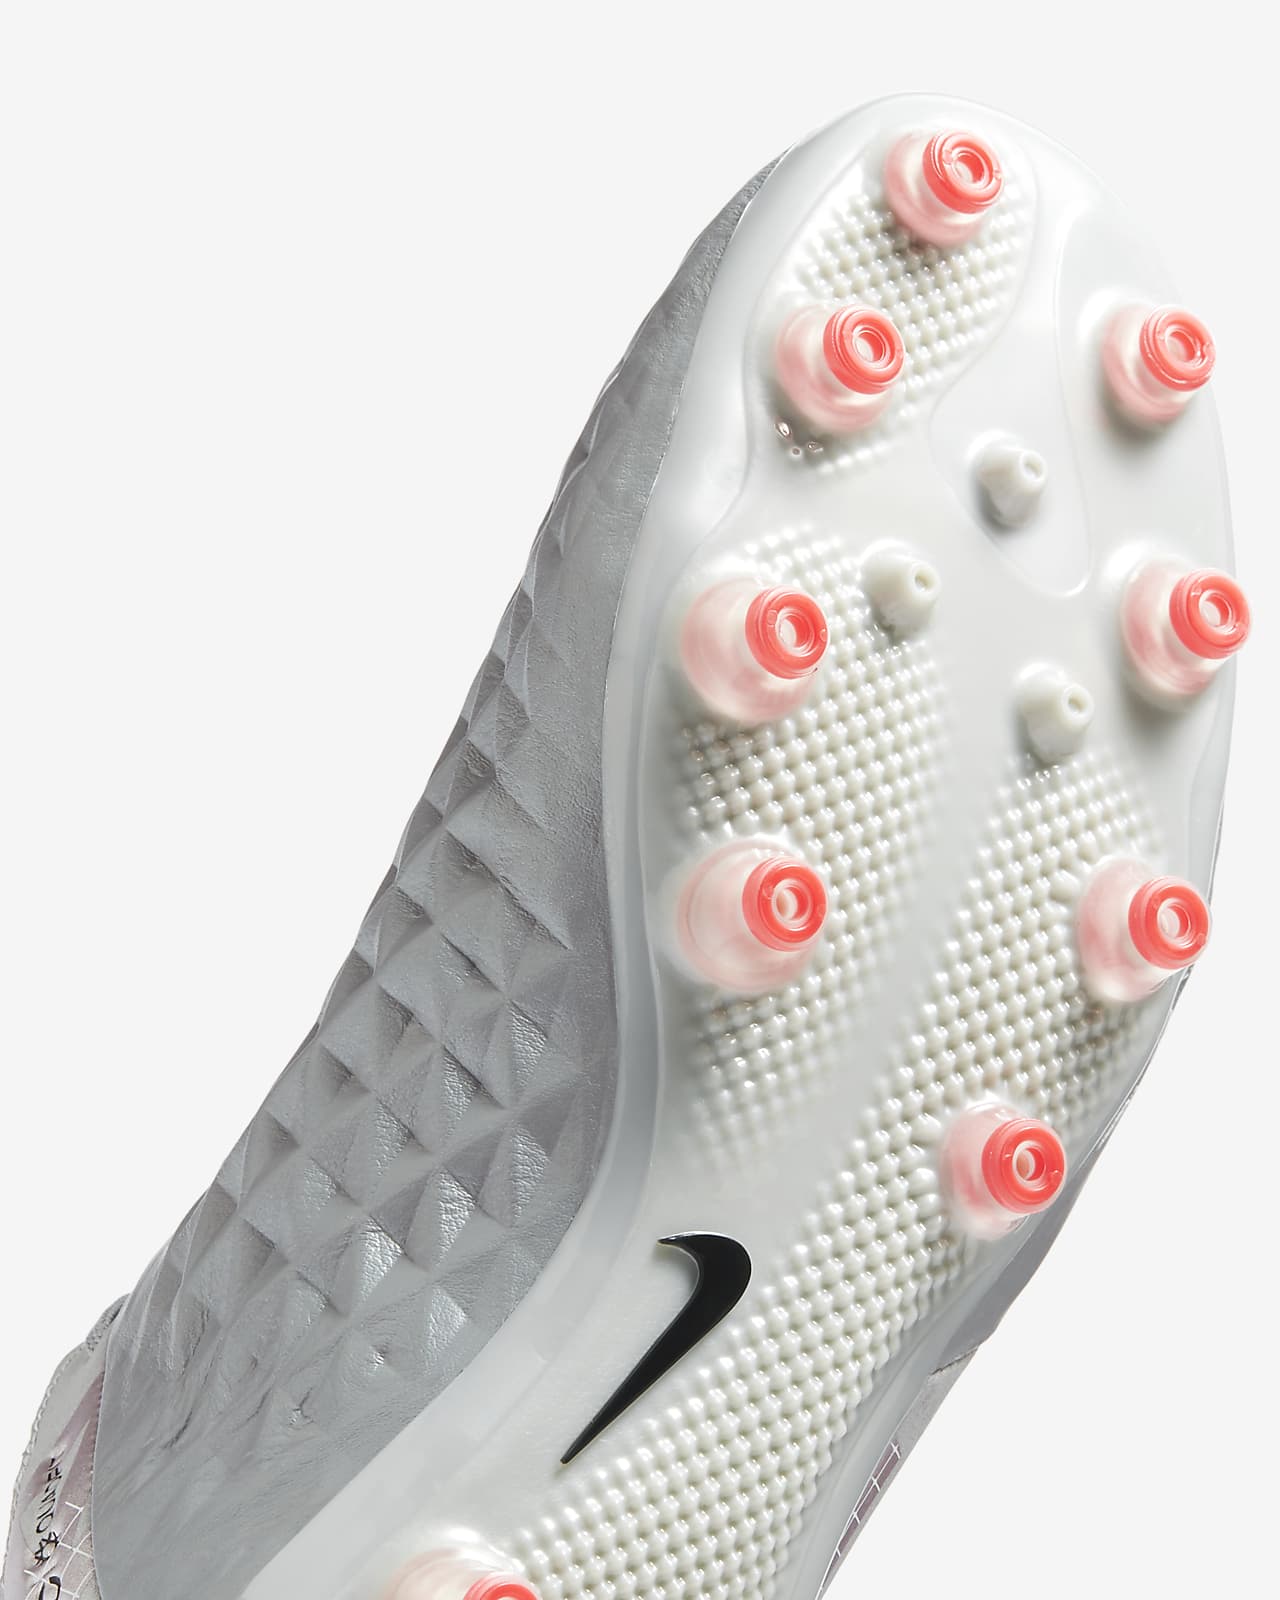 Nike Tiempo Legend 8 Academy IC Football Shoes for. HNAK.com